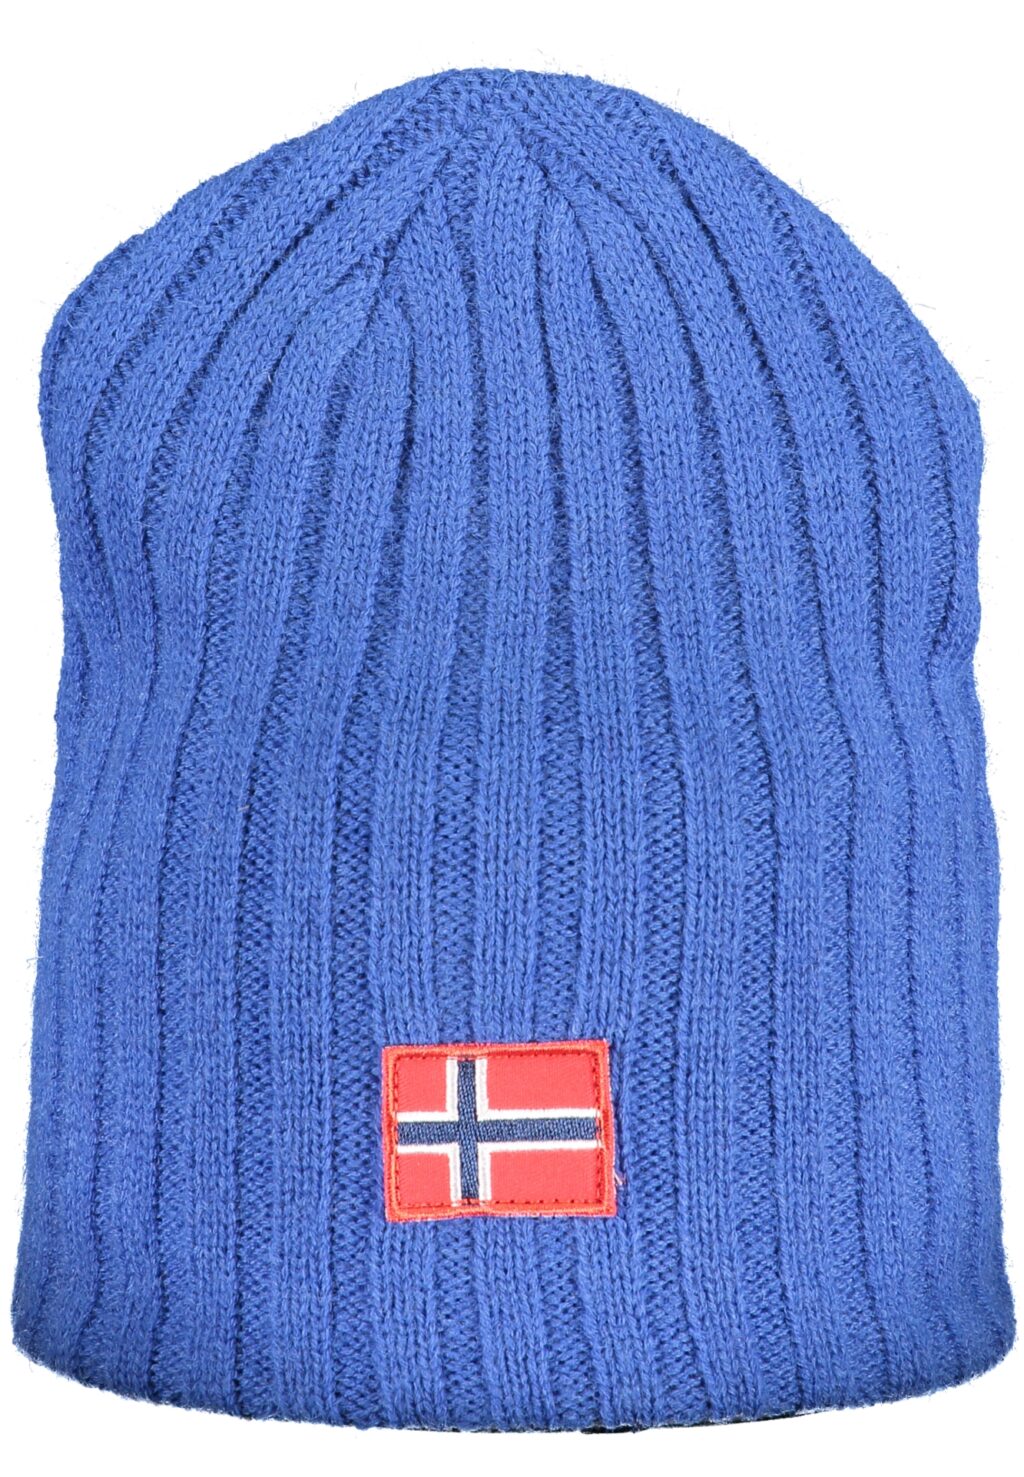 NORWAY 1963 BLUE MEN'S CAP 120105_BLBLUETTE